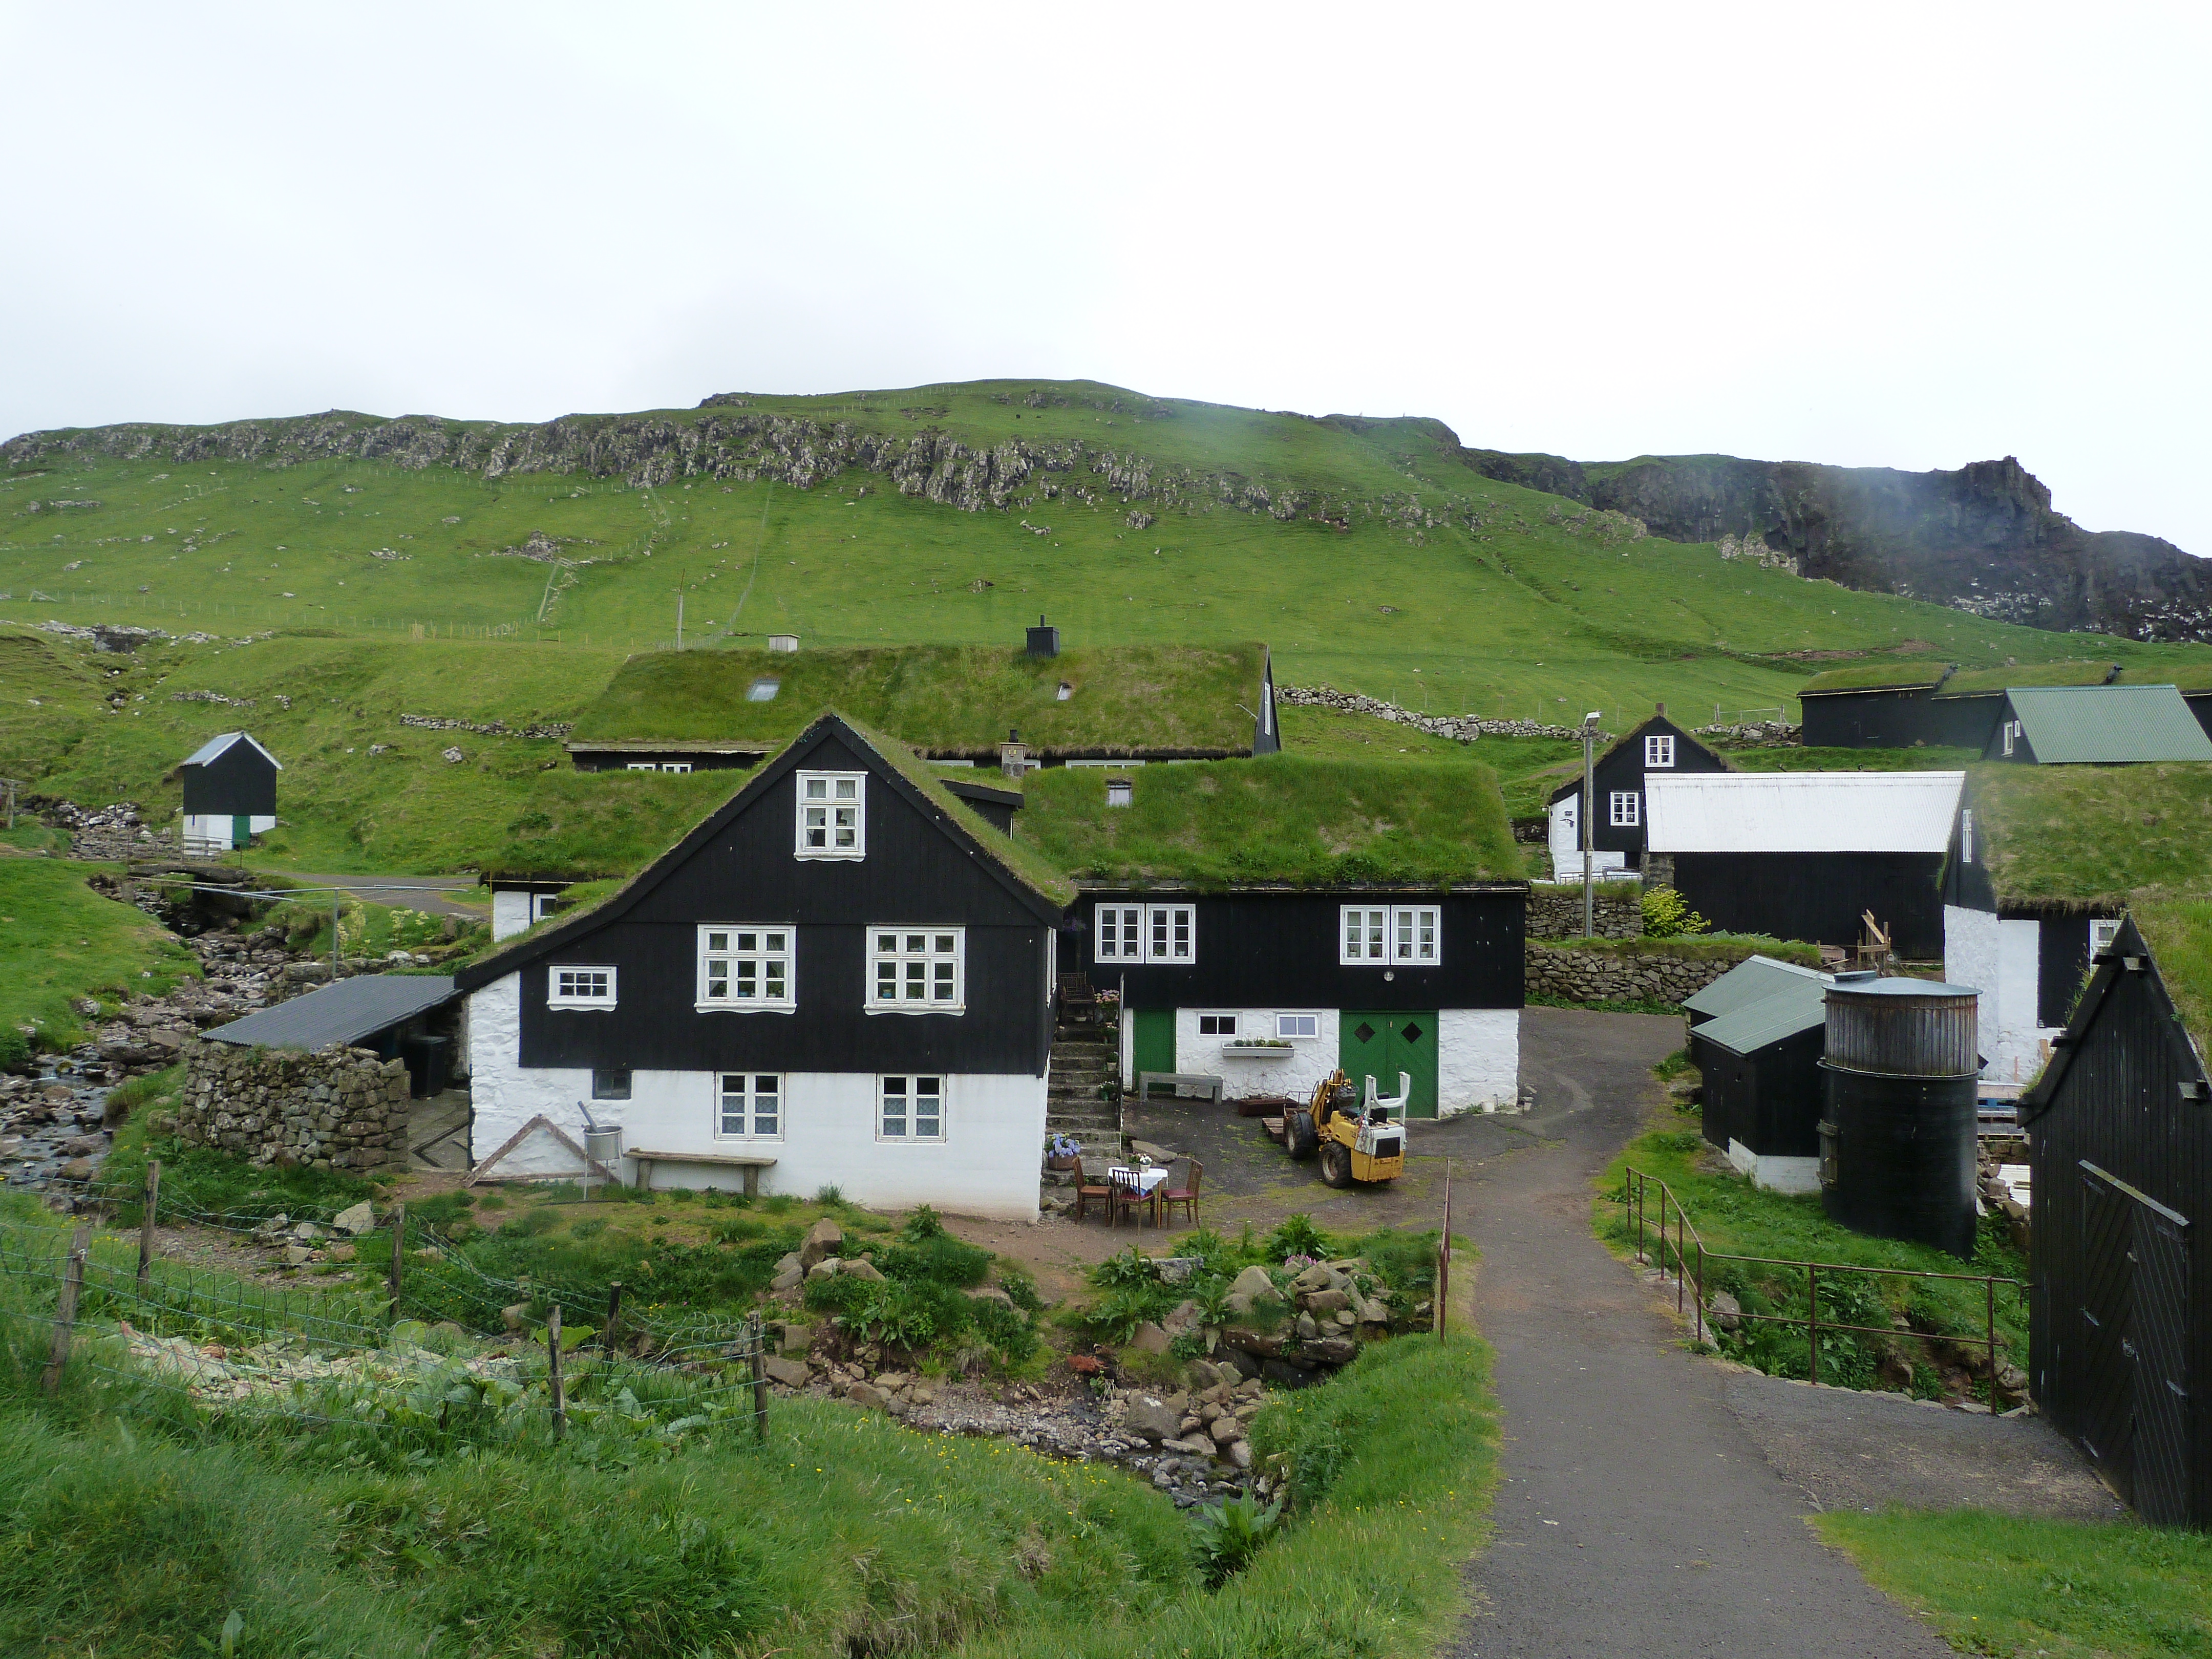 Diario de Viaje Islas Feroe - El Reino de Thor - Blogs de Dinamarca - DIA 2 - Mykines, el hogar de los frailecillos (3)